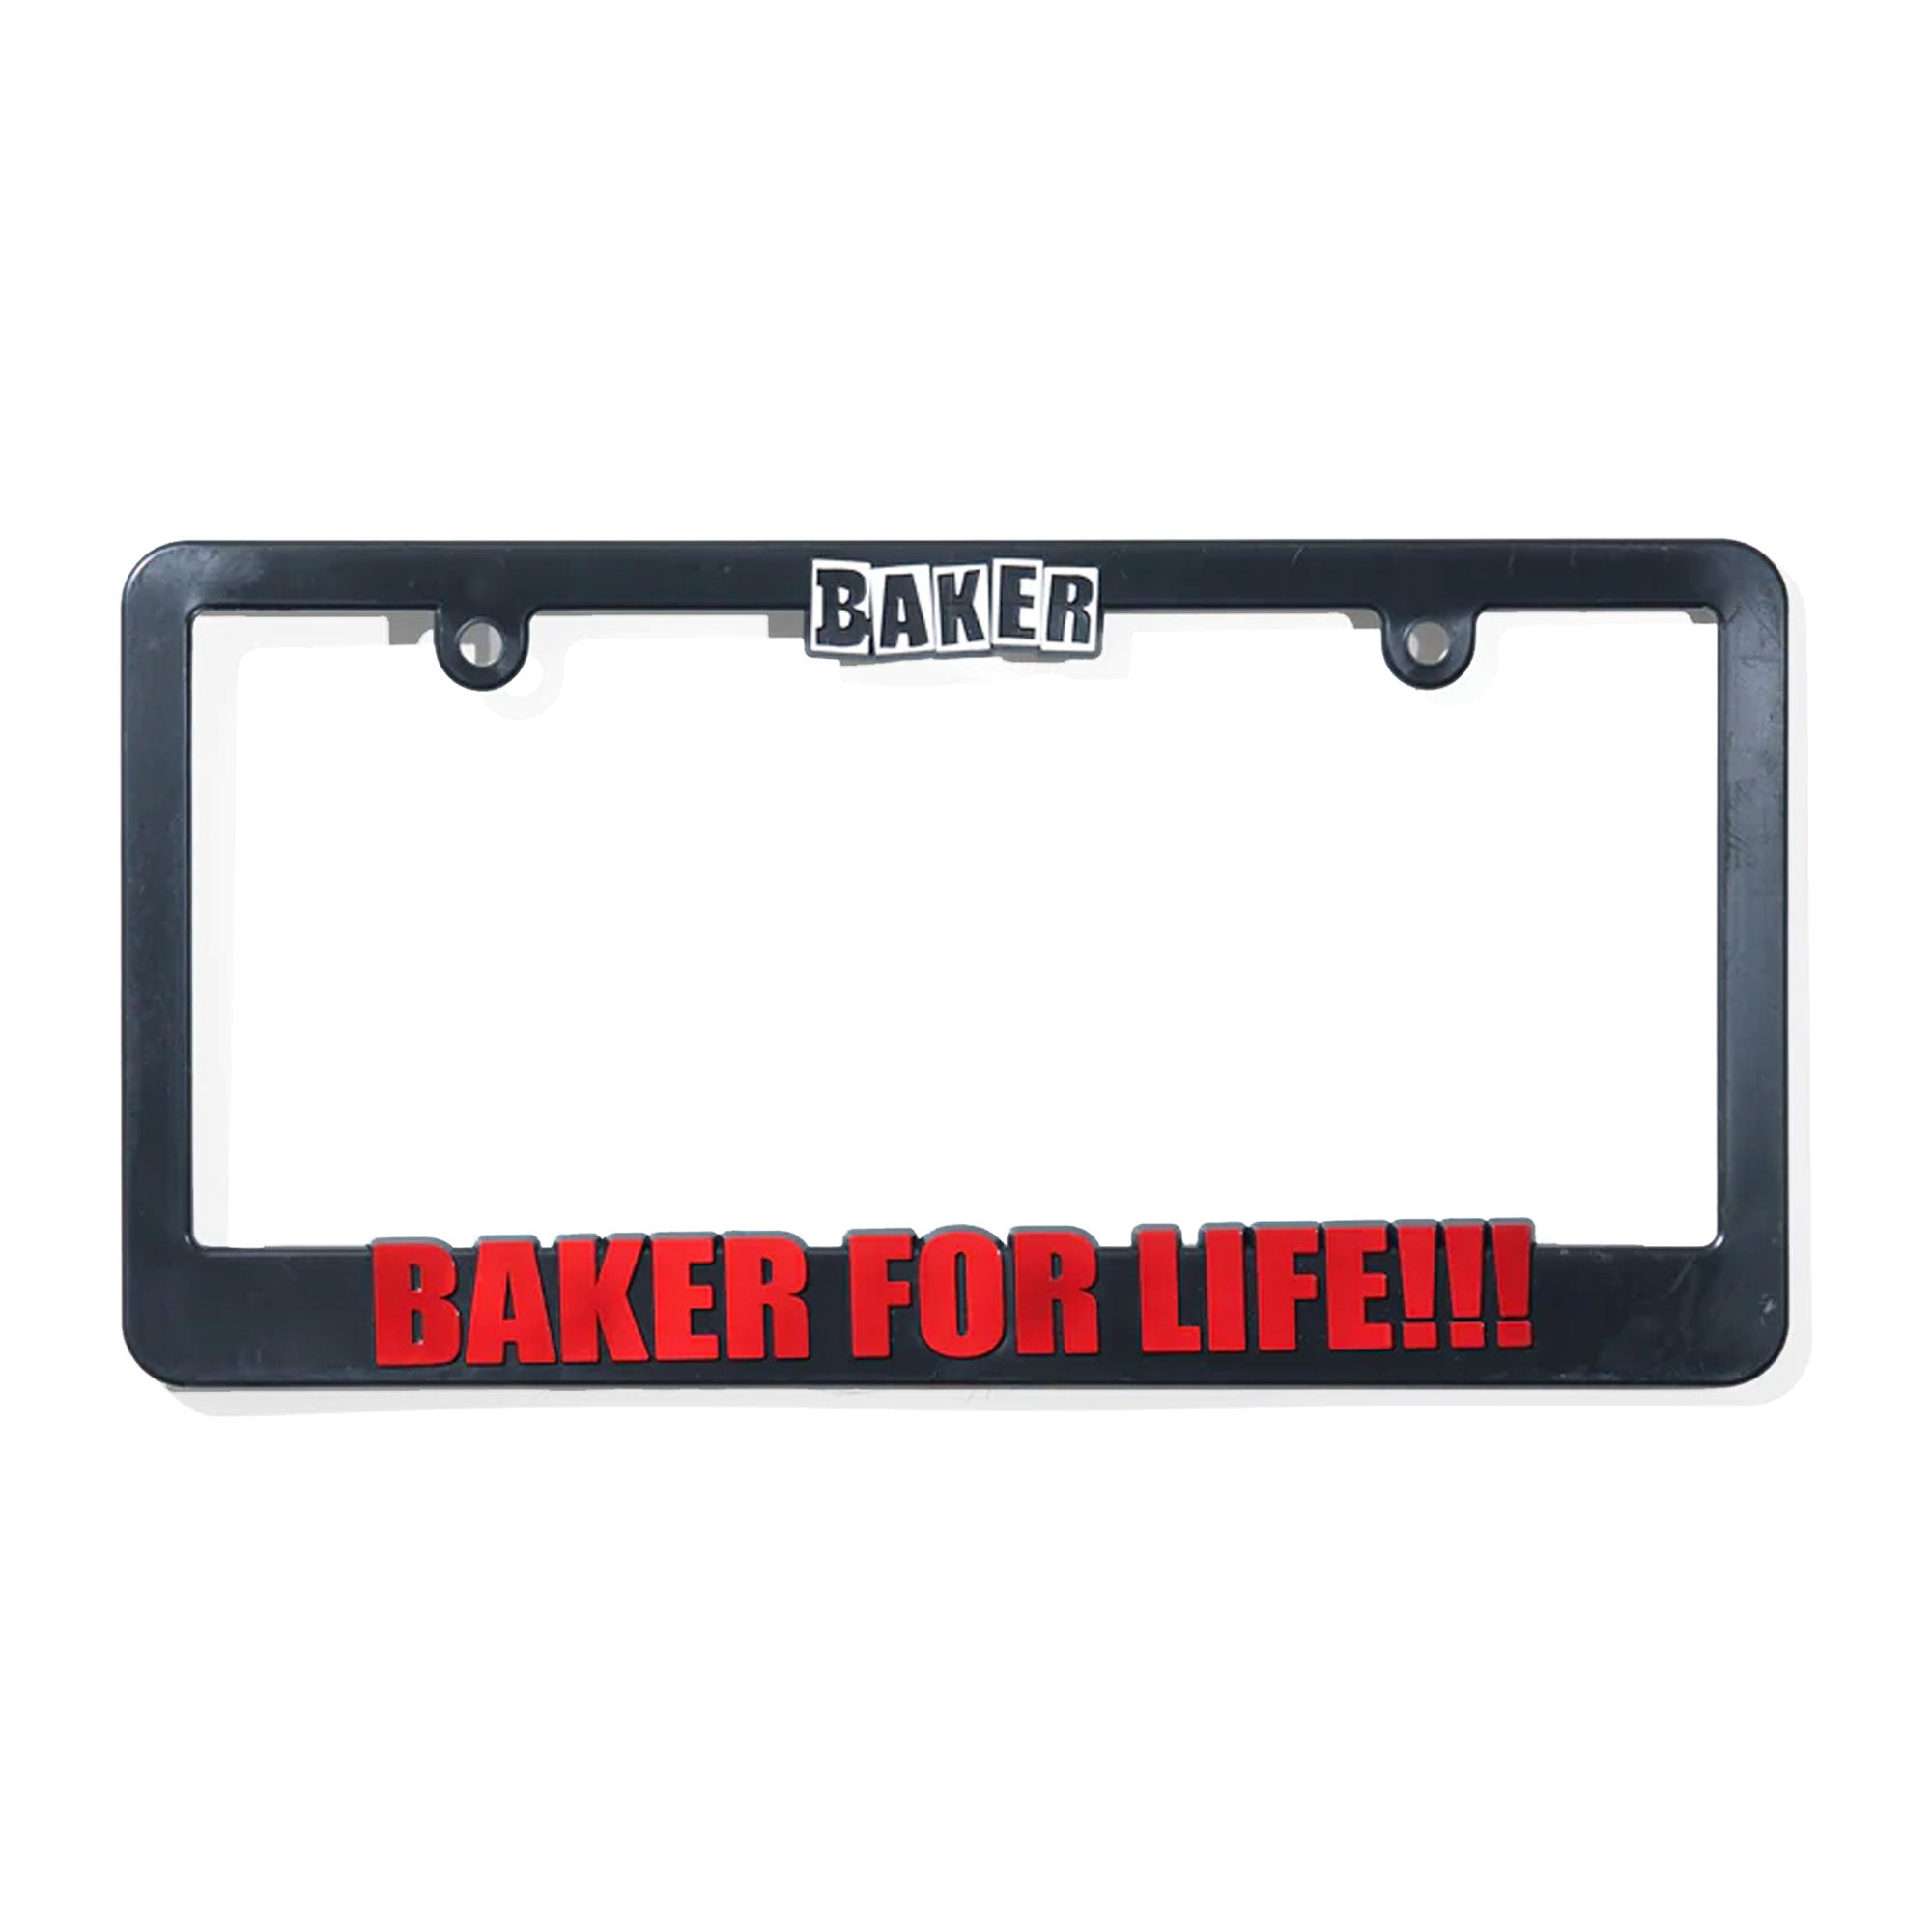 Baker "For Life!!!" License Plate Frame